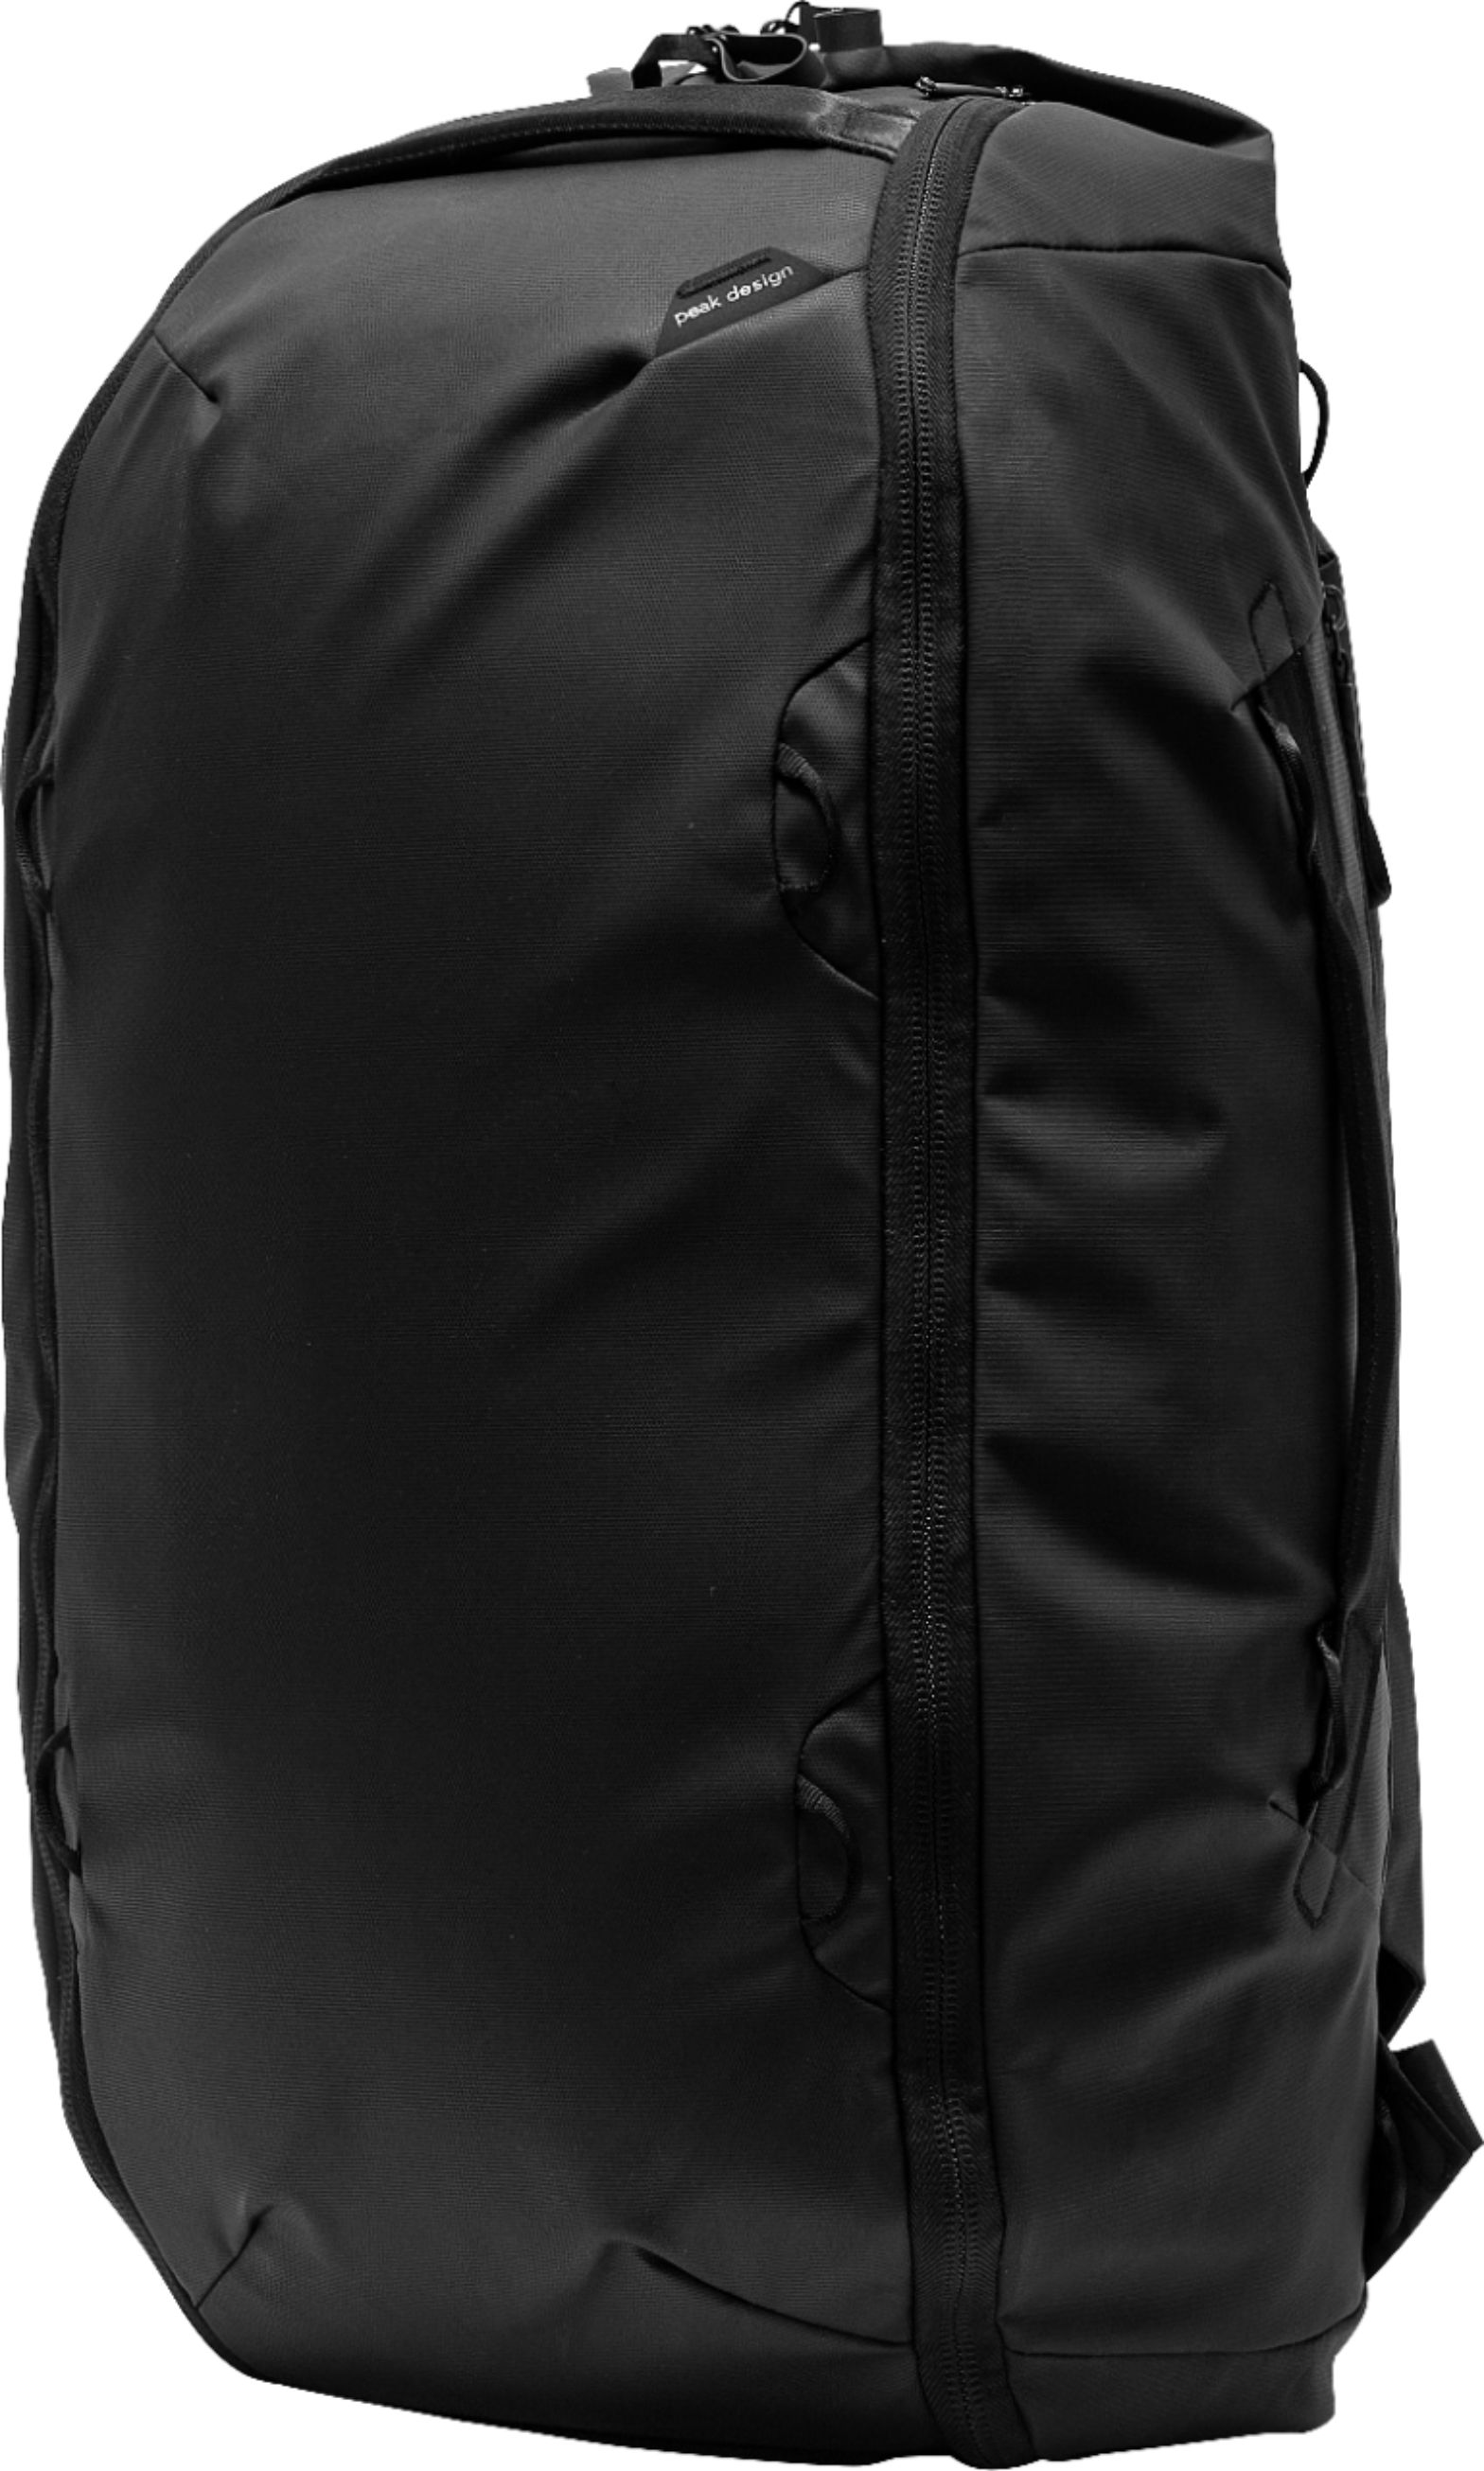 Left View: Peak Design - Shoulder Bag for 13" Laptop - Black